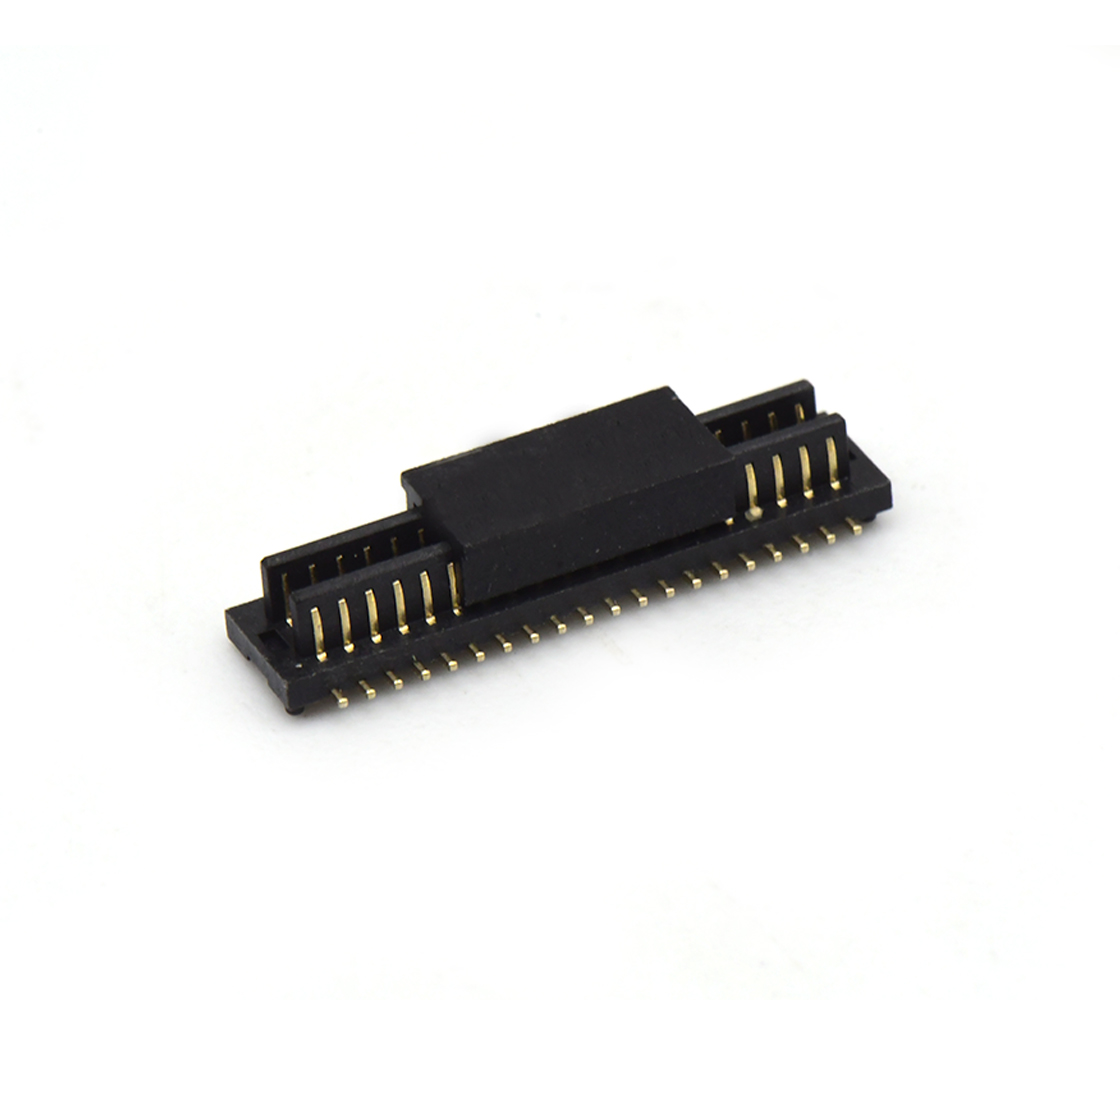 B0801板对板连接器Pitch 0.8 双槽H1.0 双排SMT型带柱公座 40Pin黑色 Gold flash